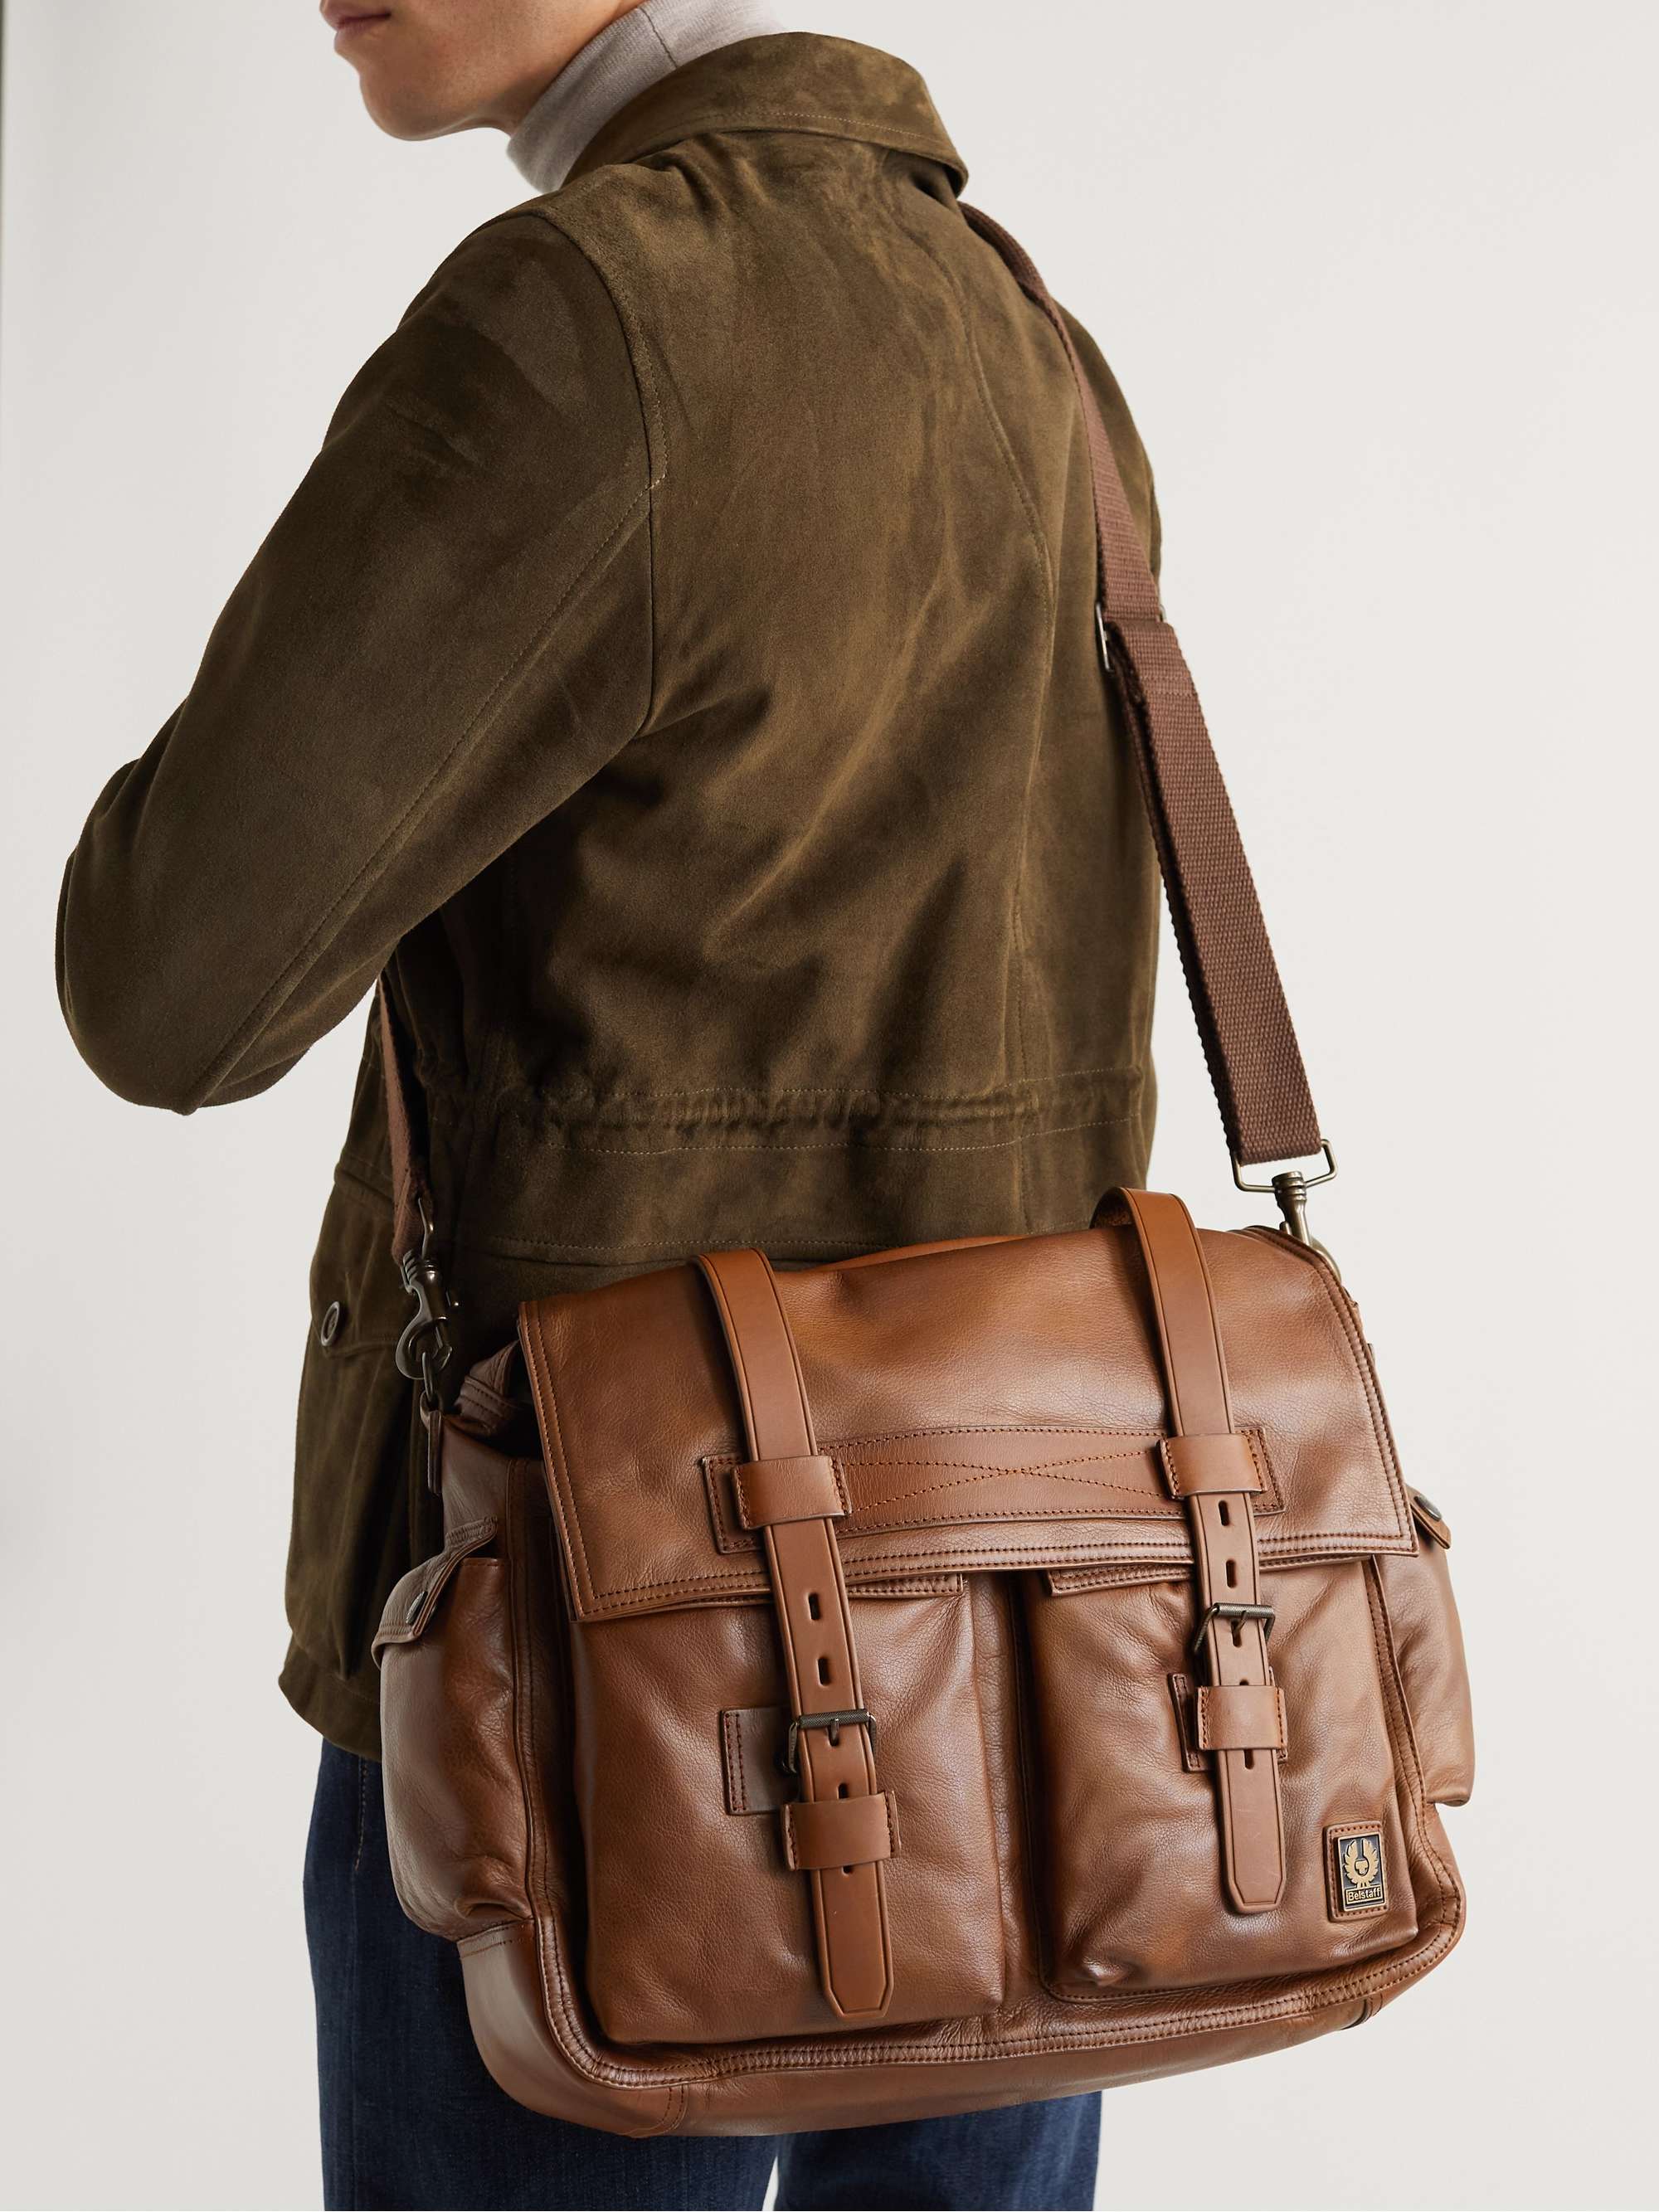 Tan Leather Messenger Bag | BELSTAFF | MR PORTER